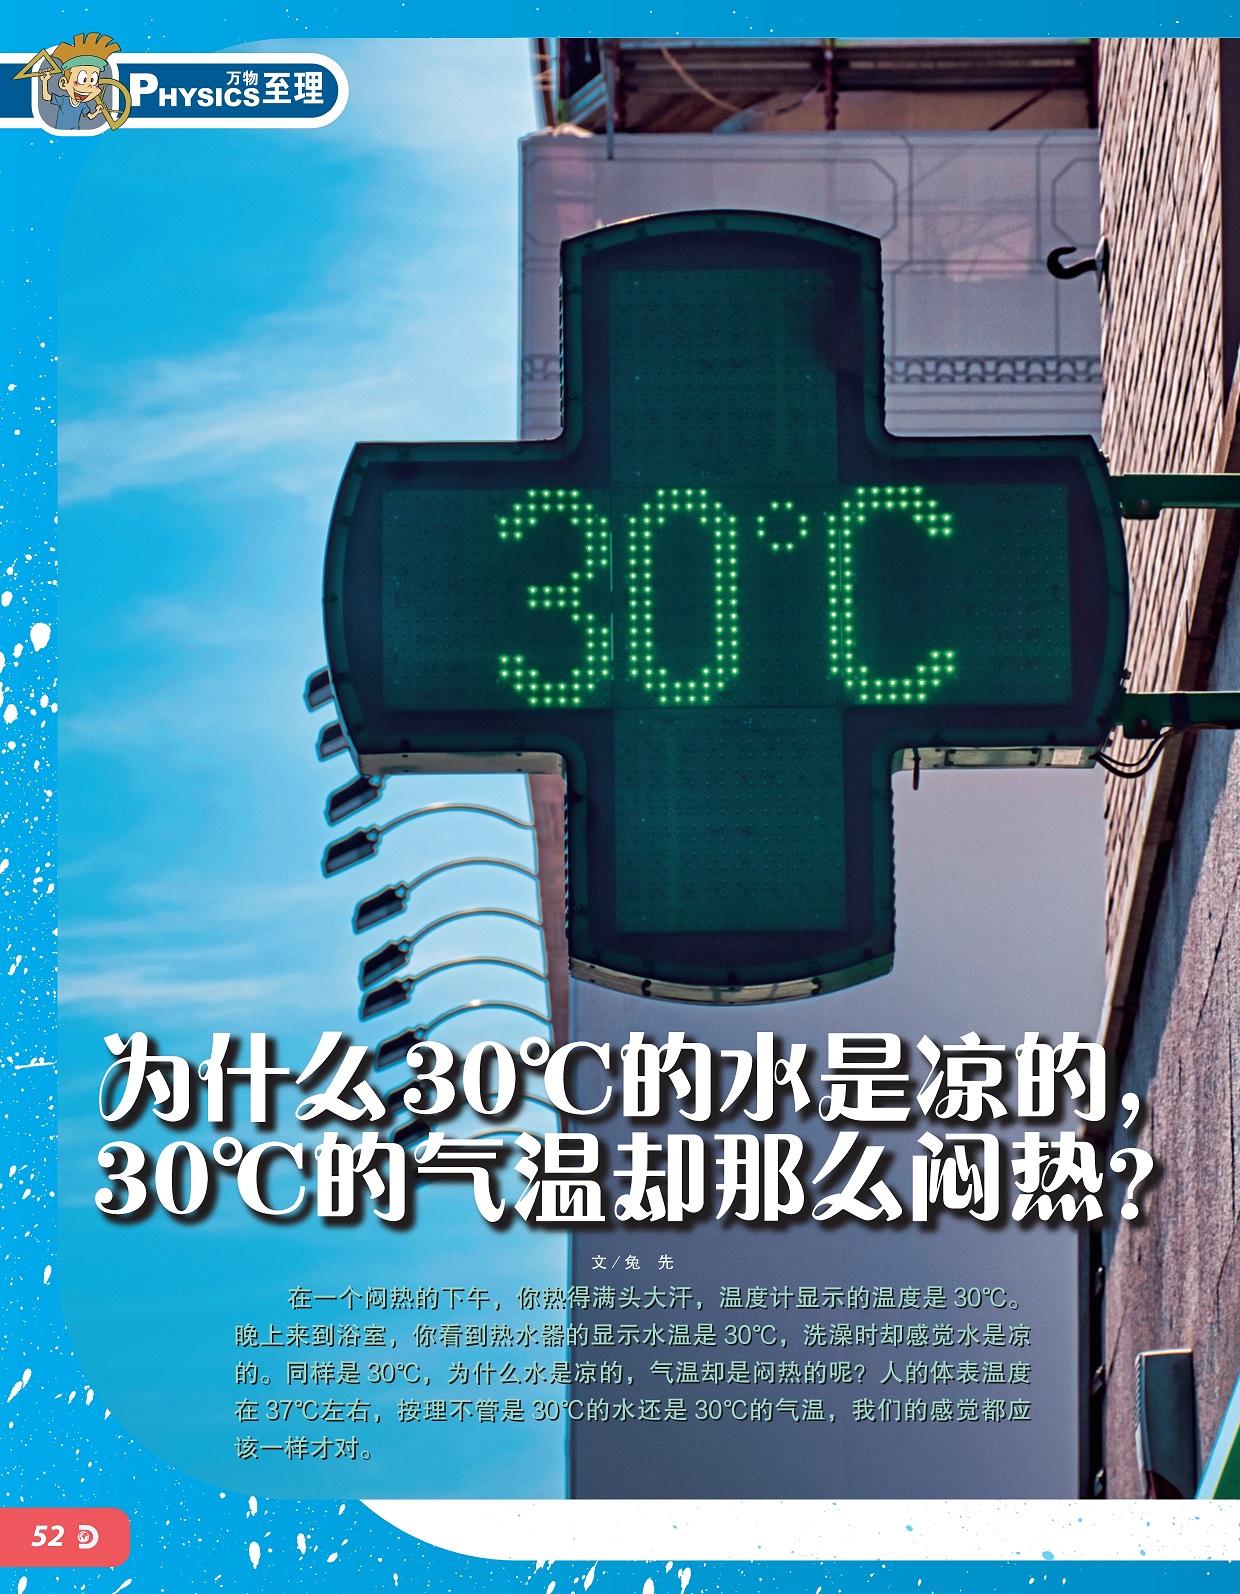 30℃水是凉的气温却是闷热的,人的体表温度在37℃左右